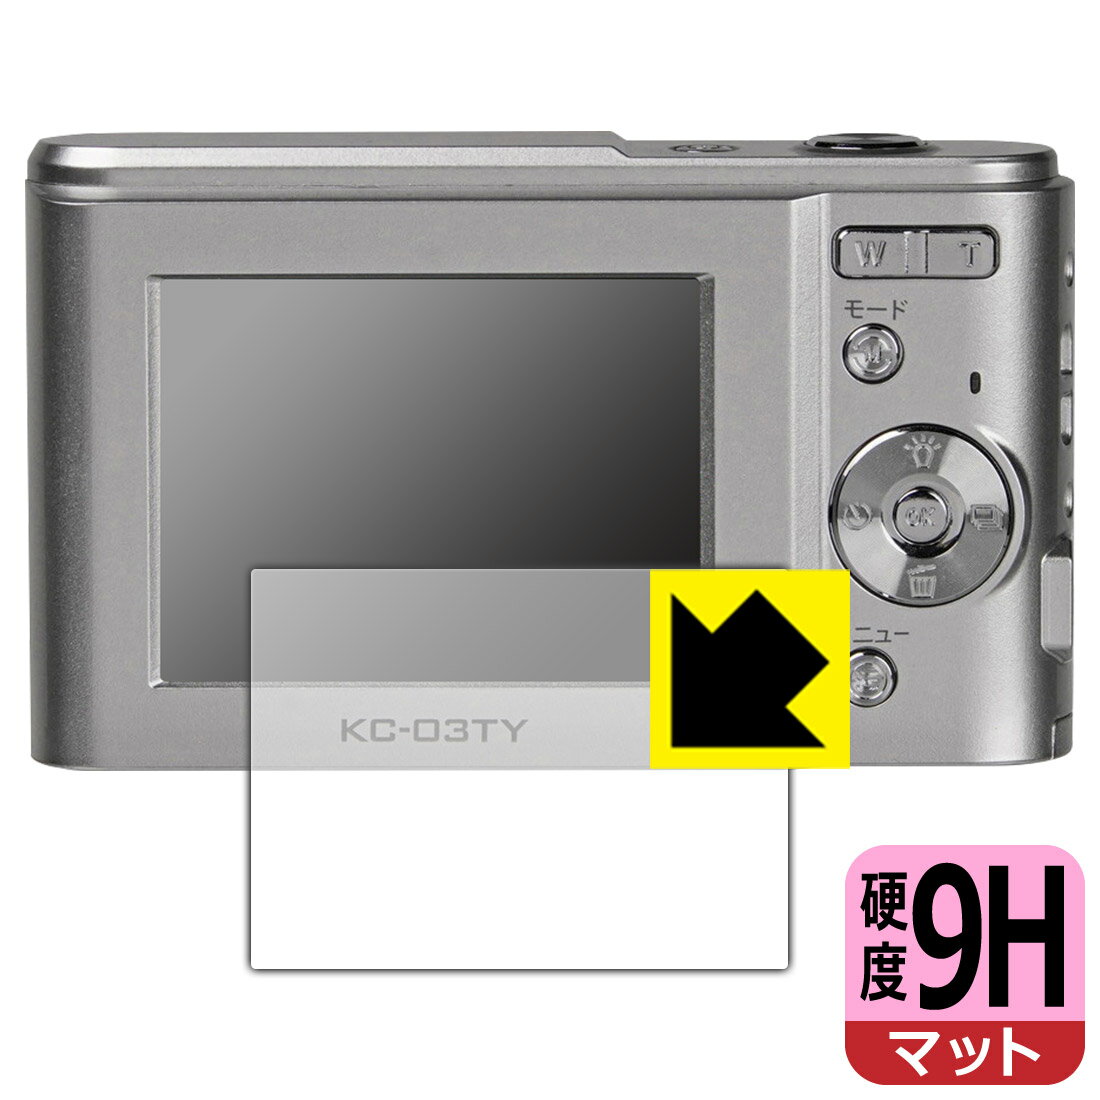 【スーパーSALE 10%OFF】9H高硬度【反射低減】保護フィルム デジタルカメラ KC-03TY 日本製 自社製造直販